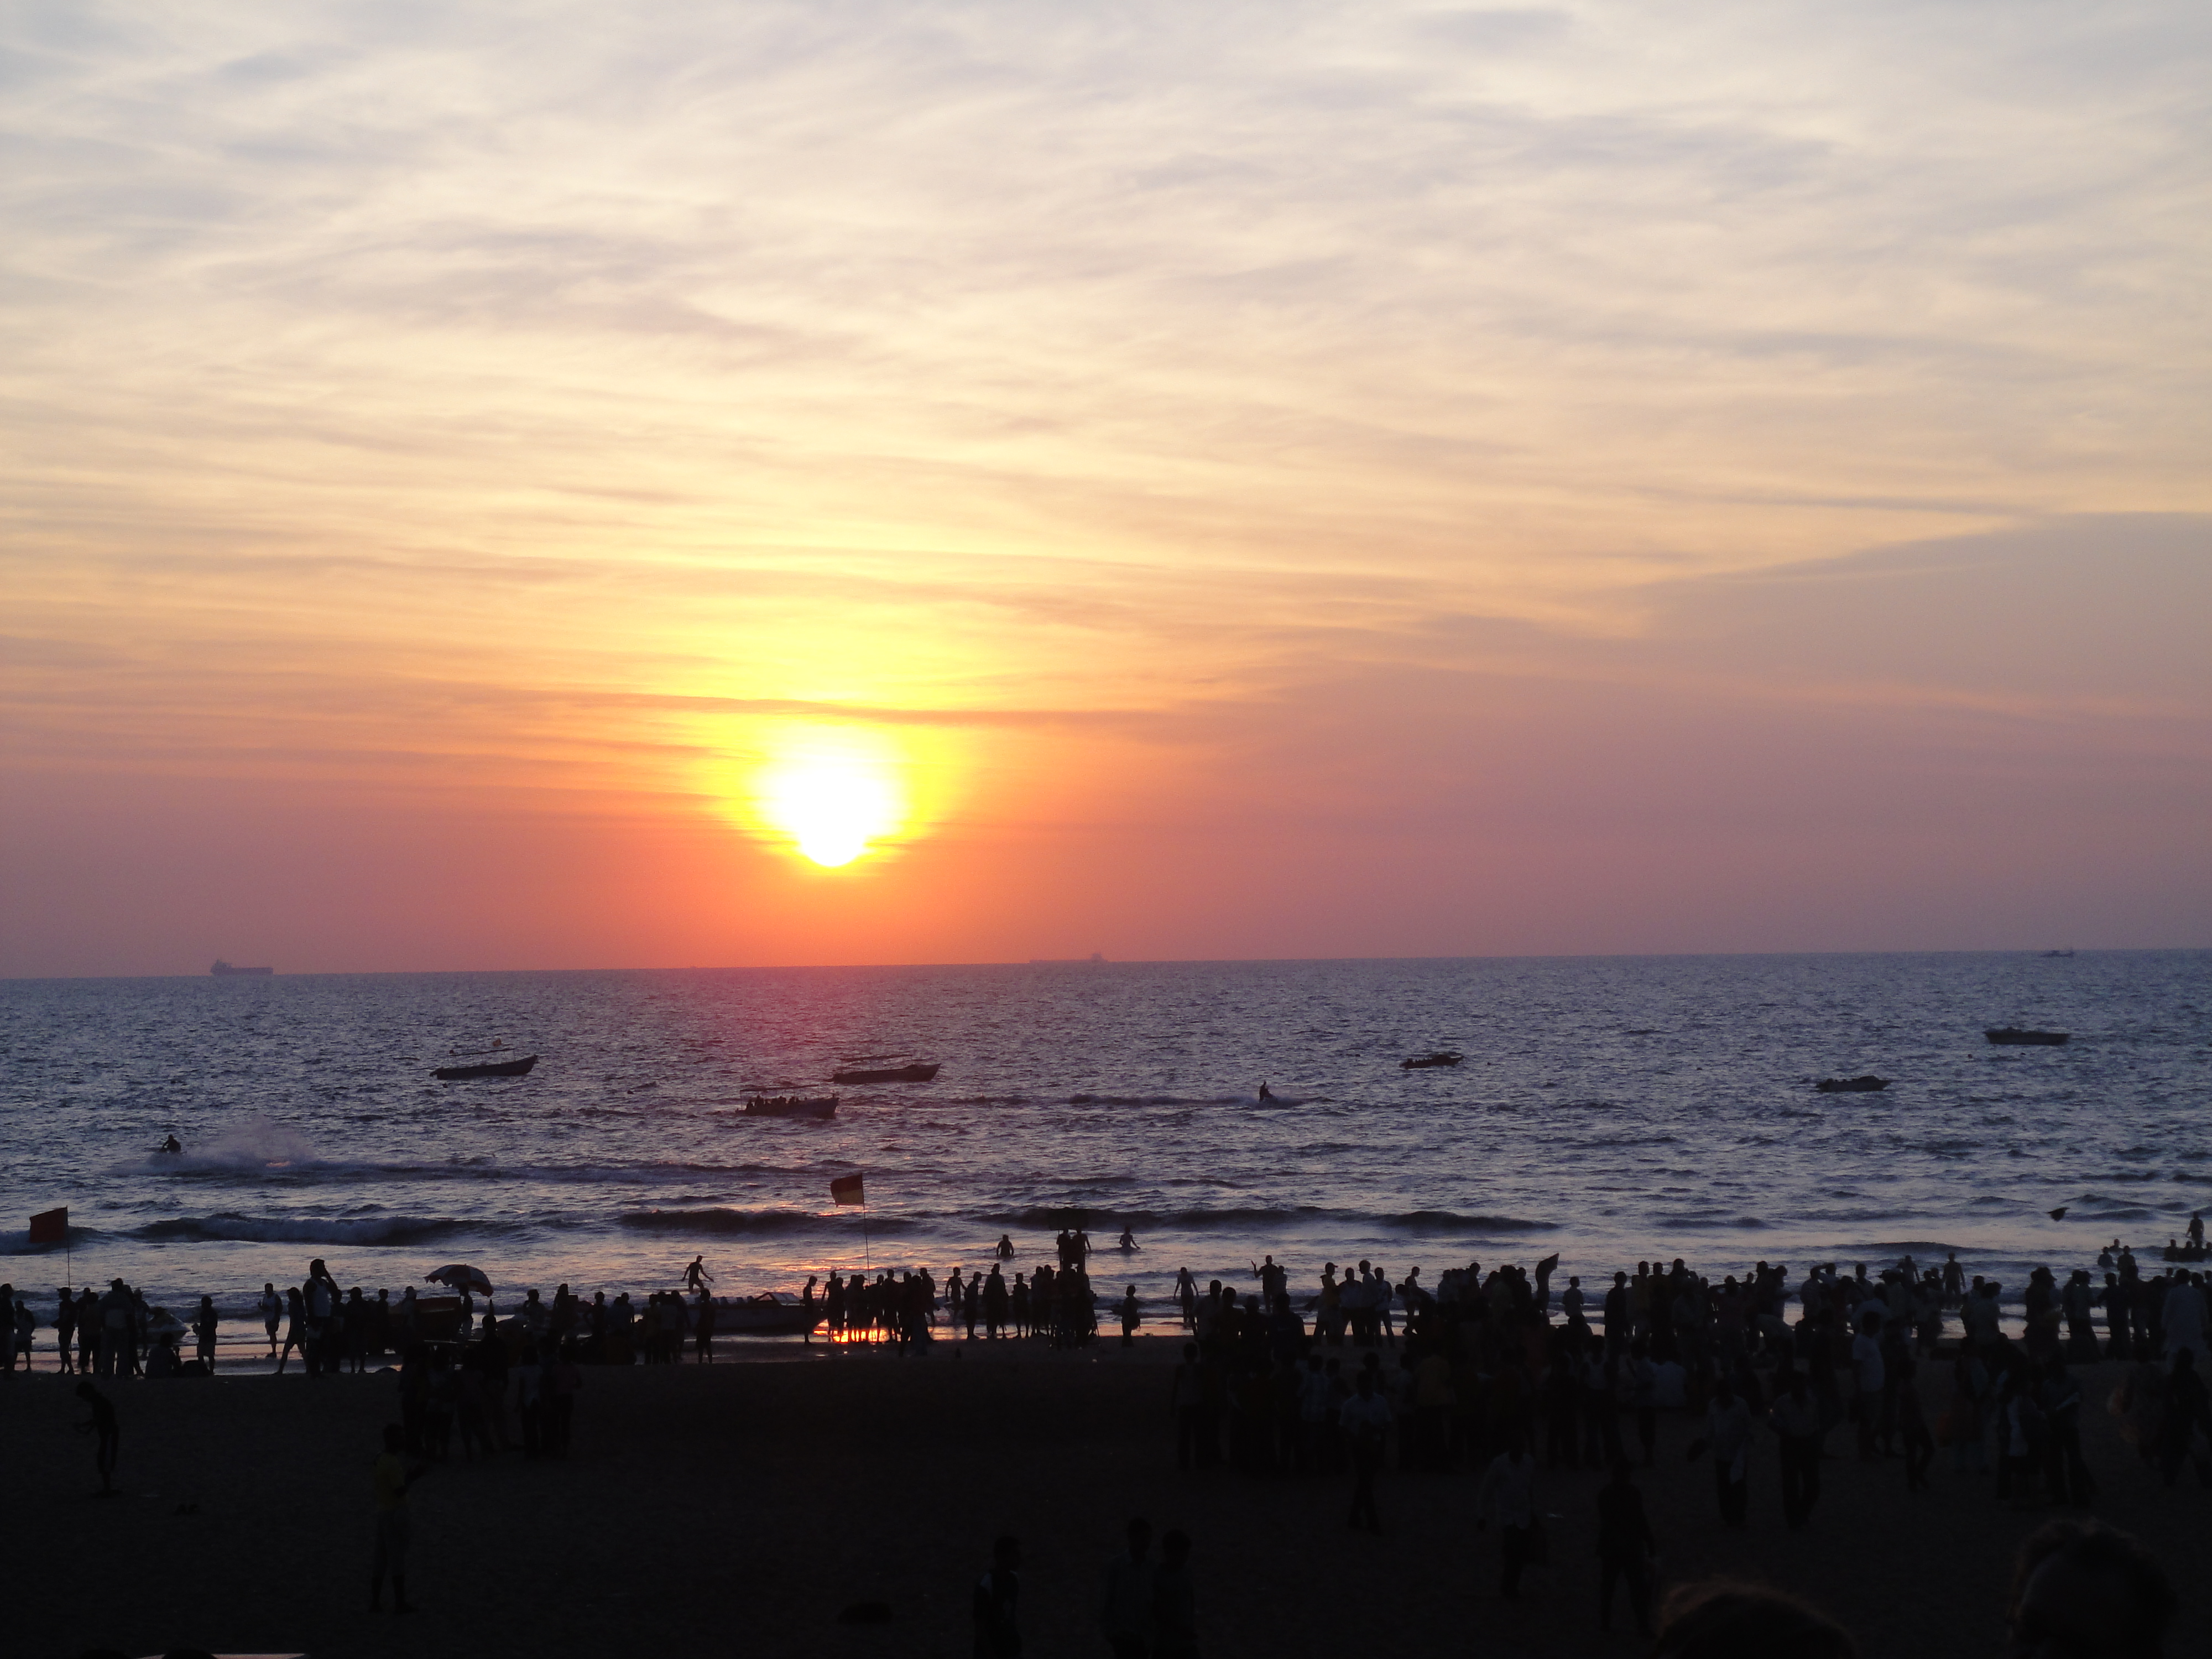 Sunset at Calangute Beach, Goa